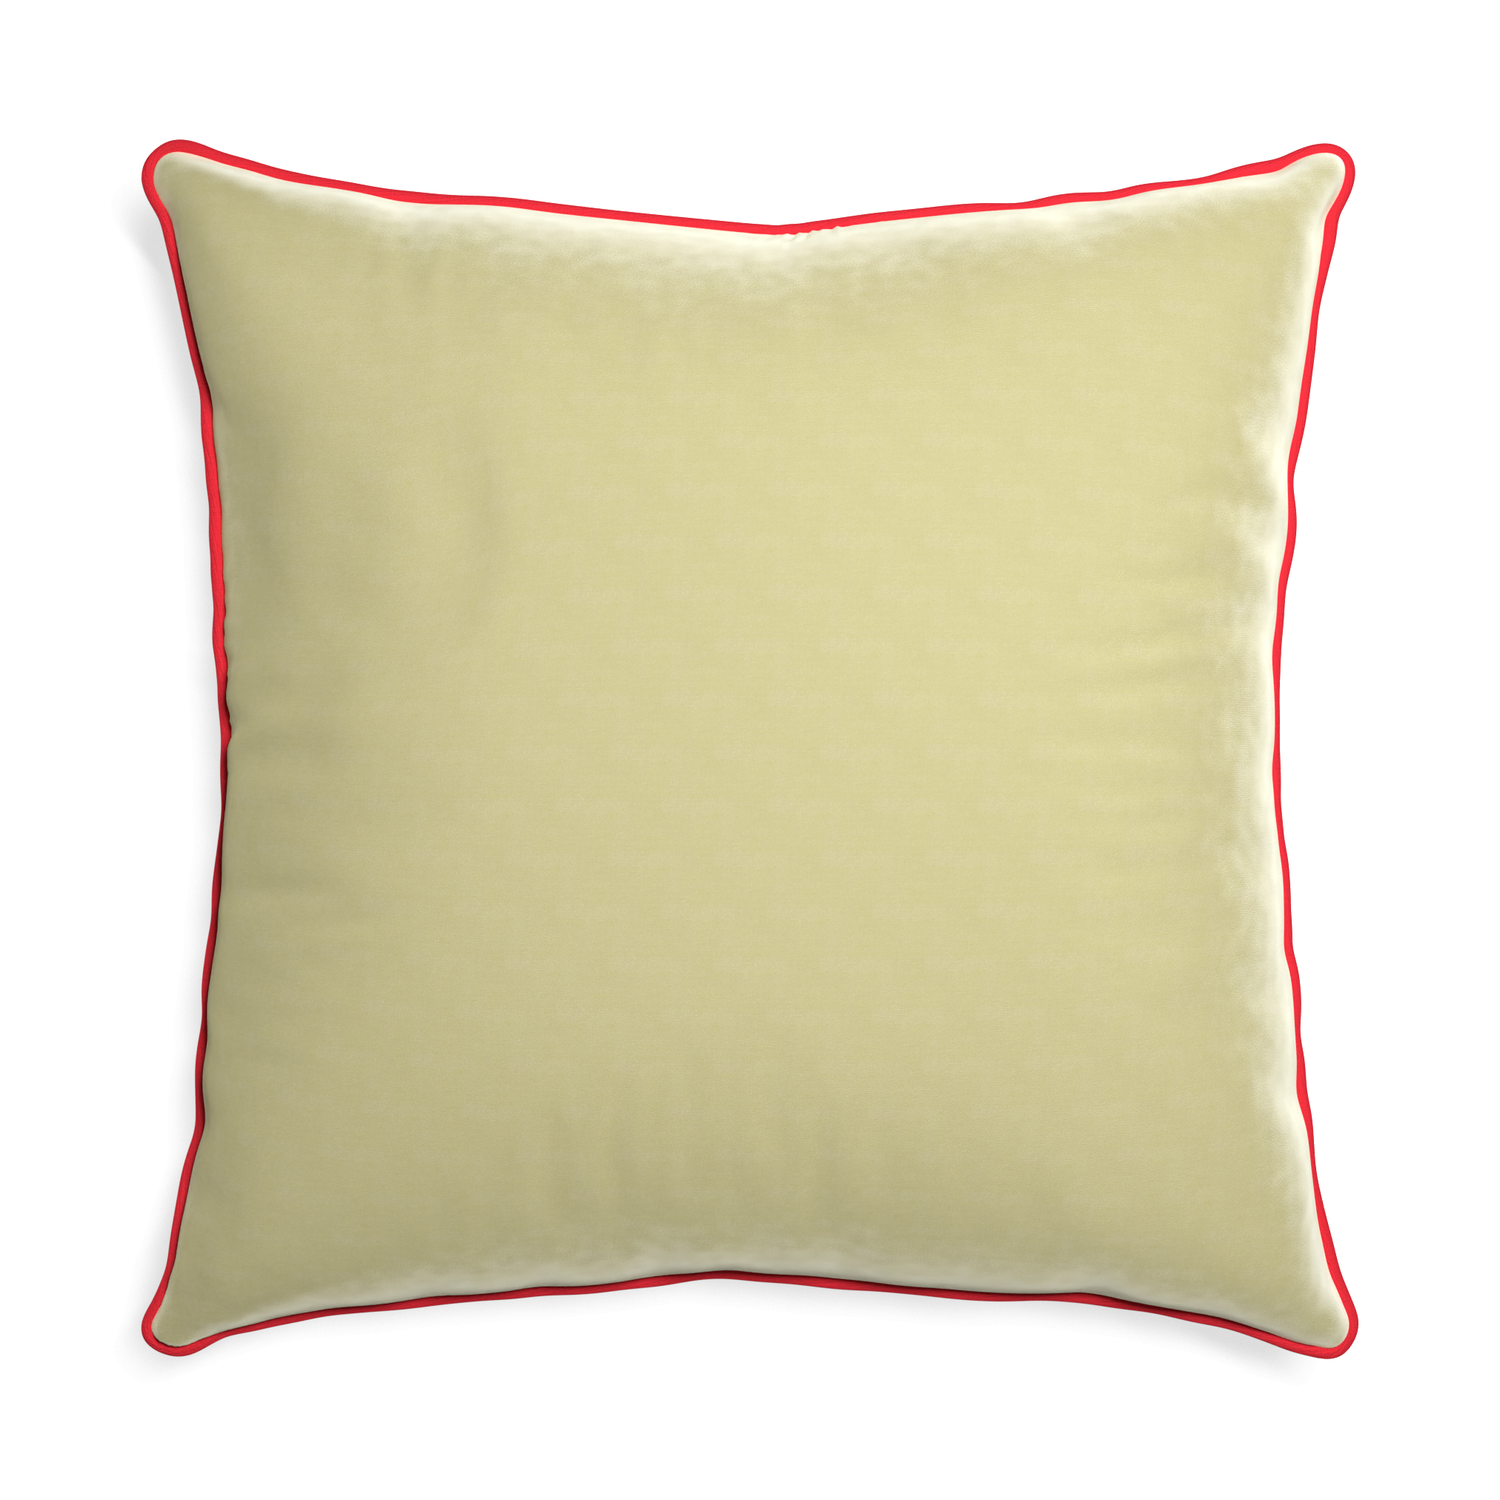 Euro-sham pear velvet custom pillow with cherry piping on white background